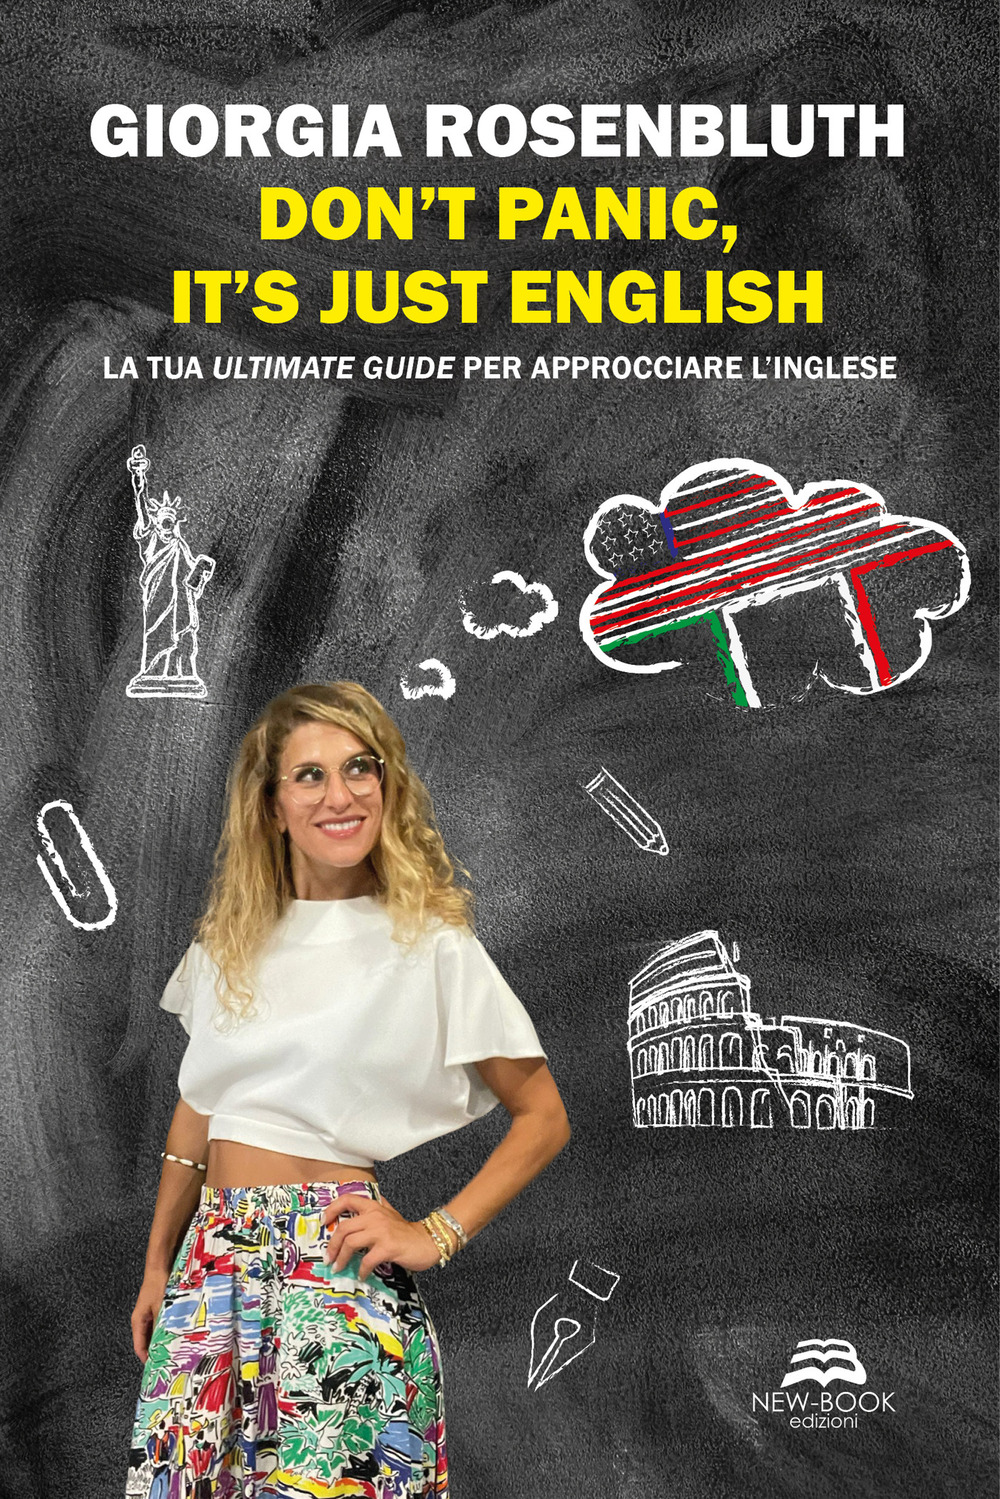 Don't panic, it's just English. La tua ultimate guide per approcciare l'inglese